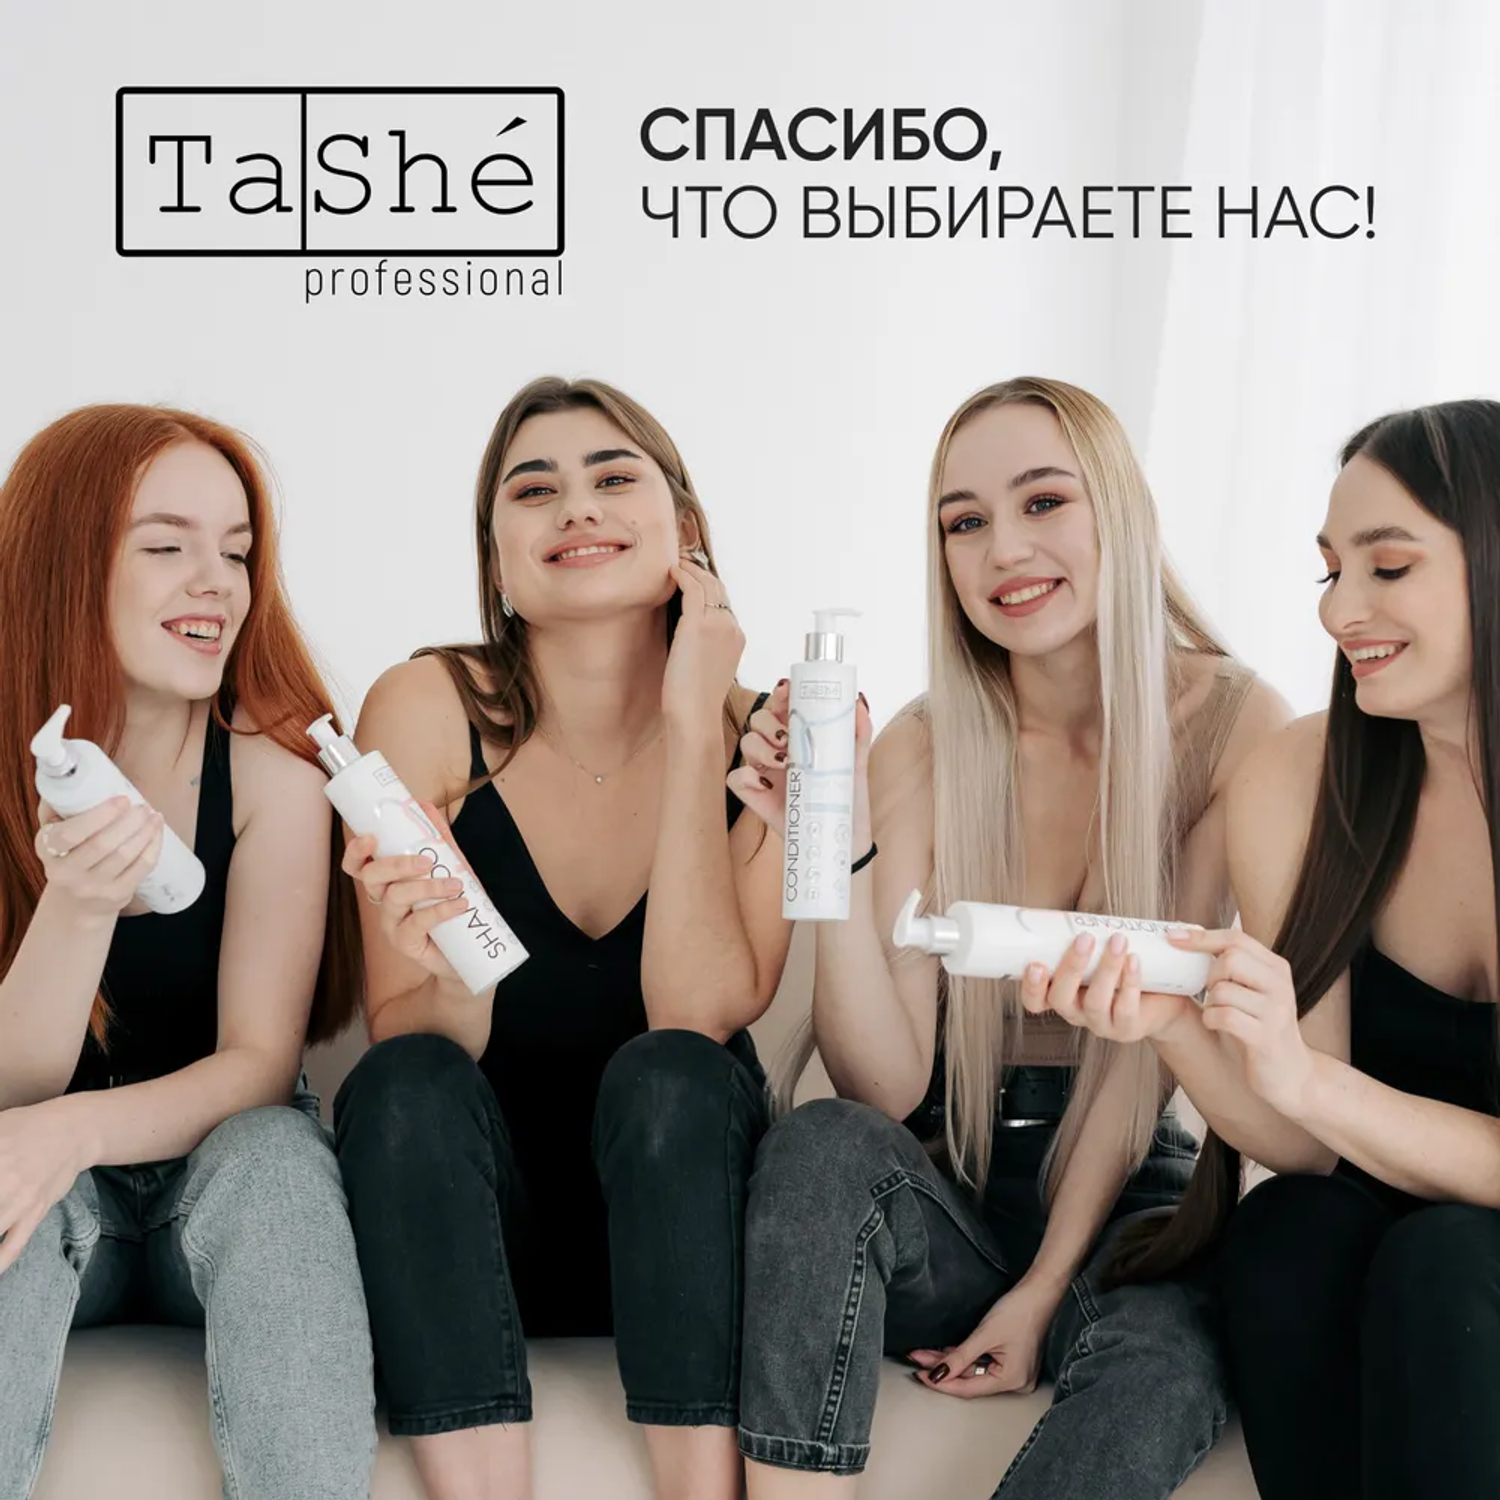 Шампунь для волос женский Tashe Professional бессульфатный питательный 300 мл - фото 9